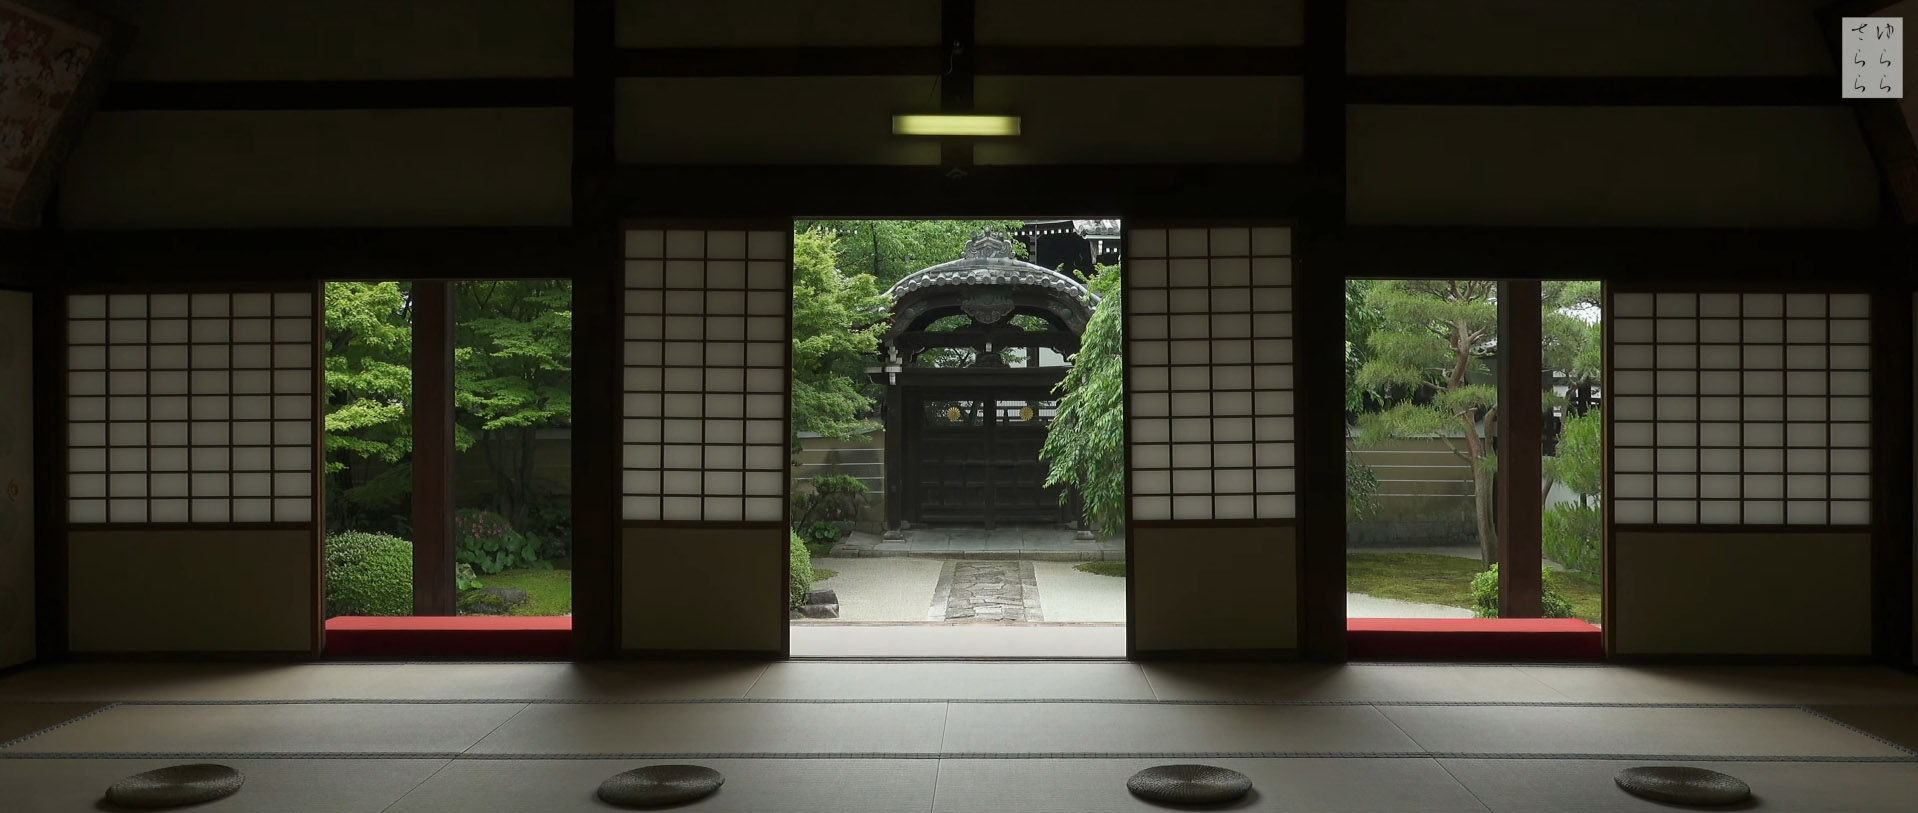 Wabi-Sabi-侘寂庭院,侘寂庭院,日本,侘寂设计,侘寂视频下载,日式侘寂庭院